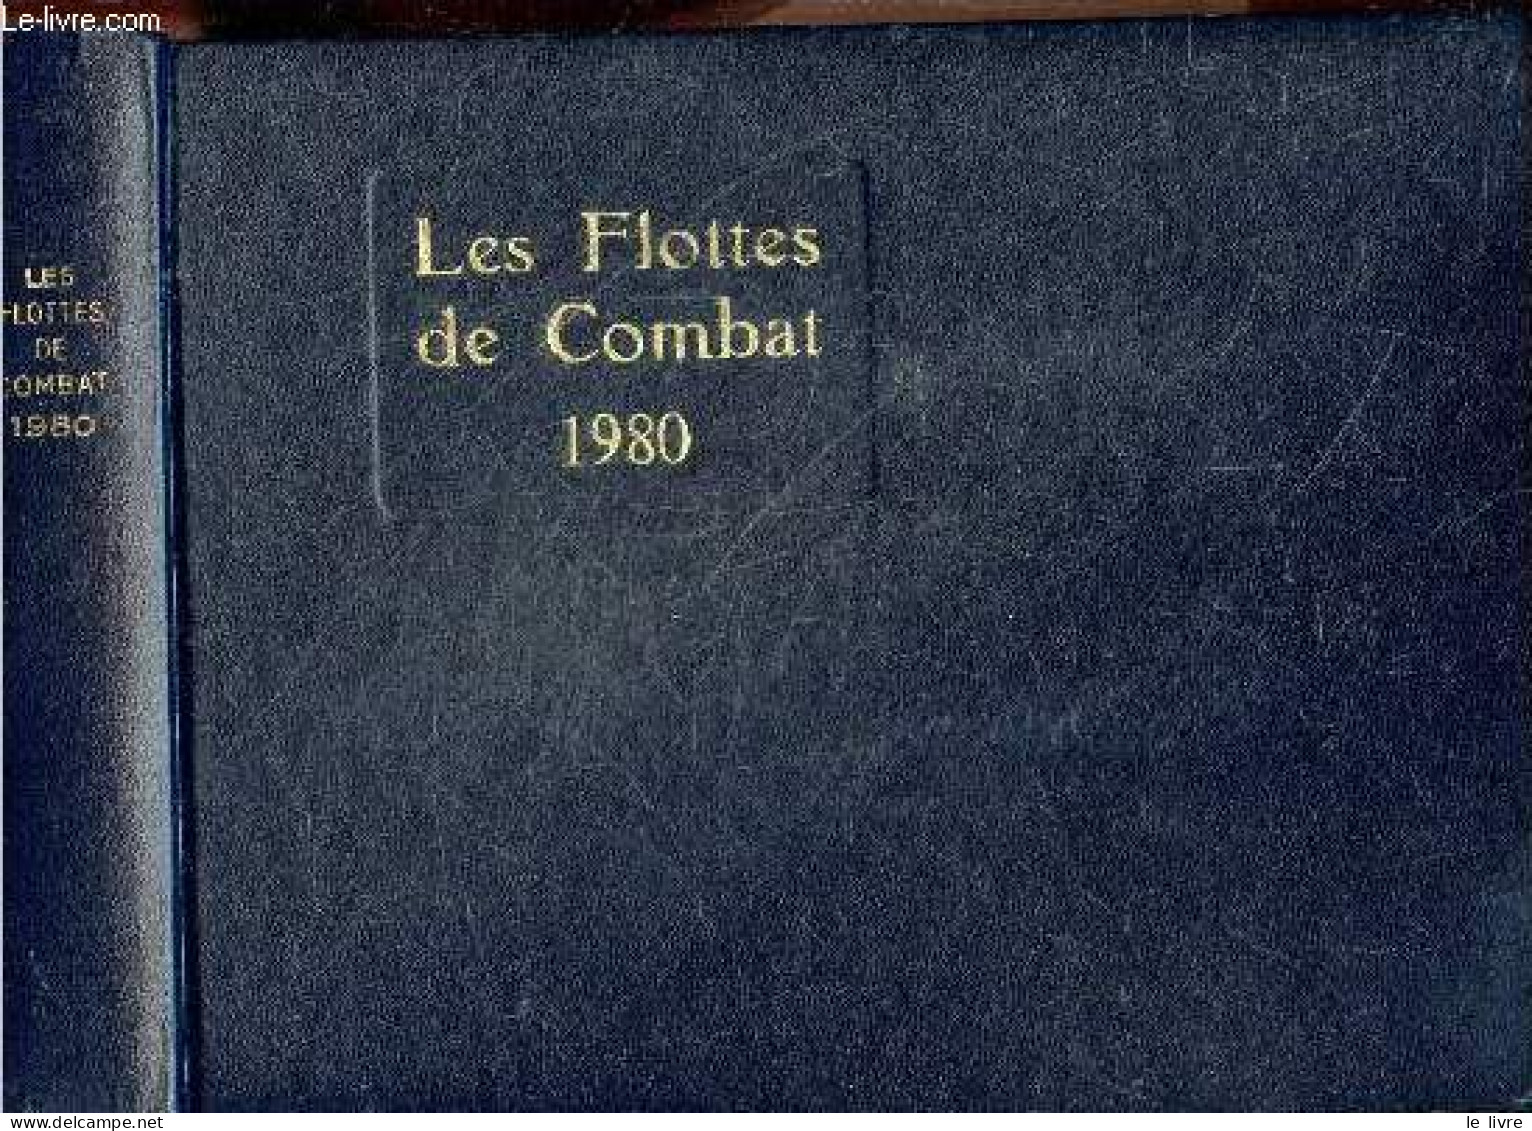 Flottes De Combat 1980 (fighting Fleets) - JEAN LABAYLE COUHAT- BALINCOURT- BRECHIGNAC .. - 1980 - Français